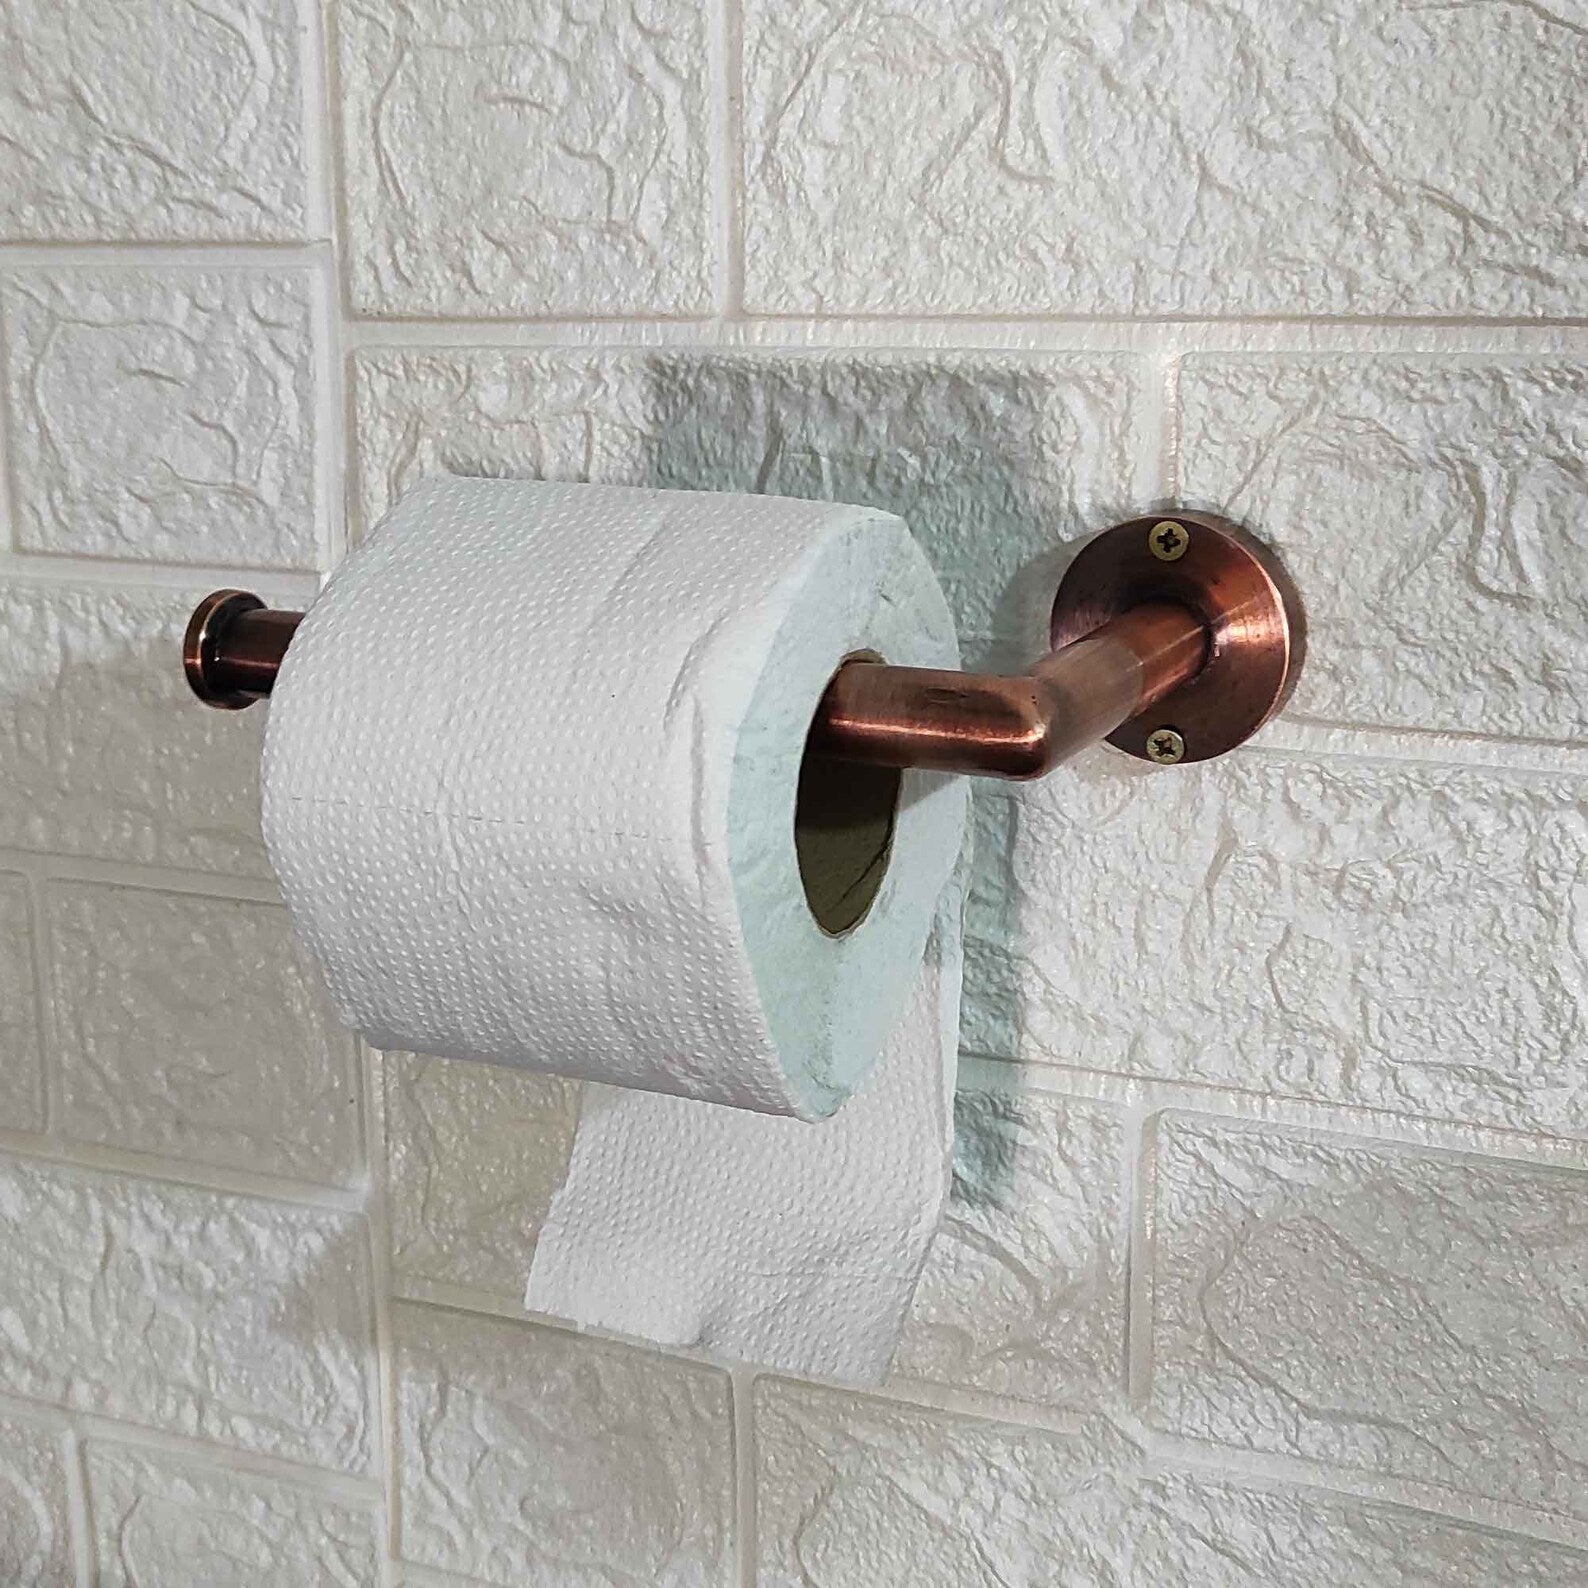 Copper Toilet Paper holder - Toilet paper holder wall mount